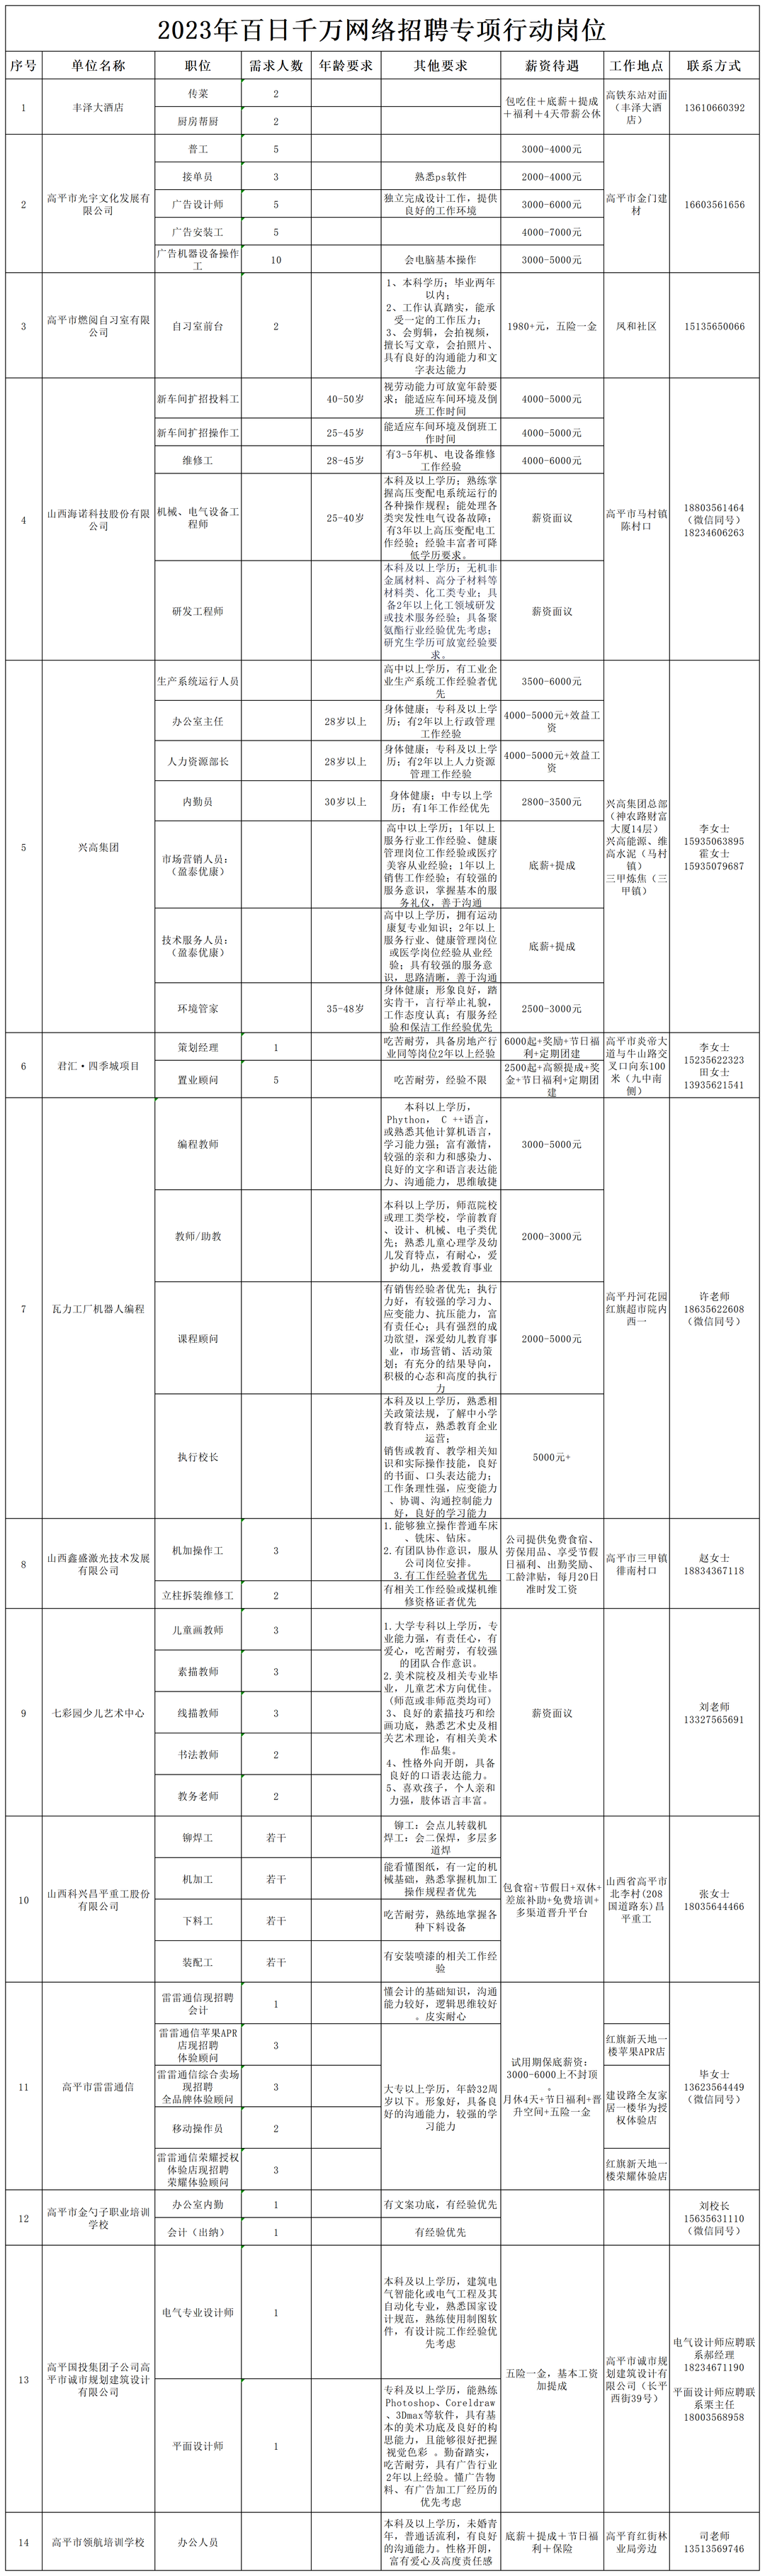 晋城高平市2023年招聘专项行动岗位信息(图7)